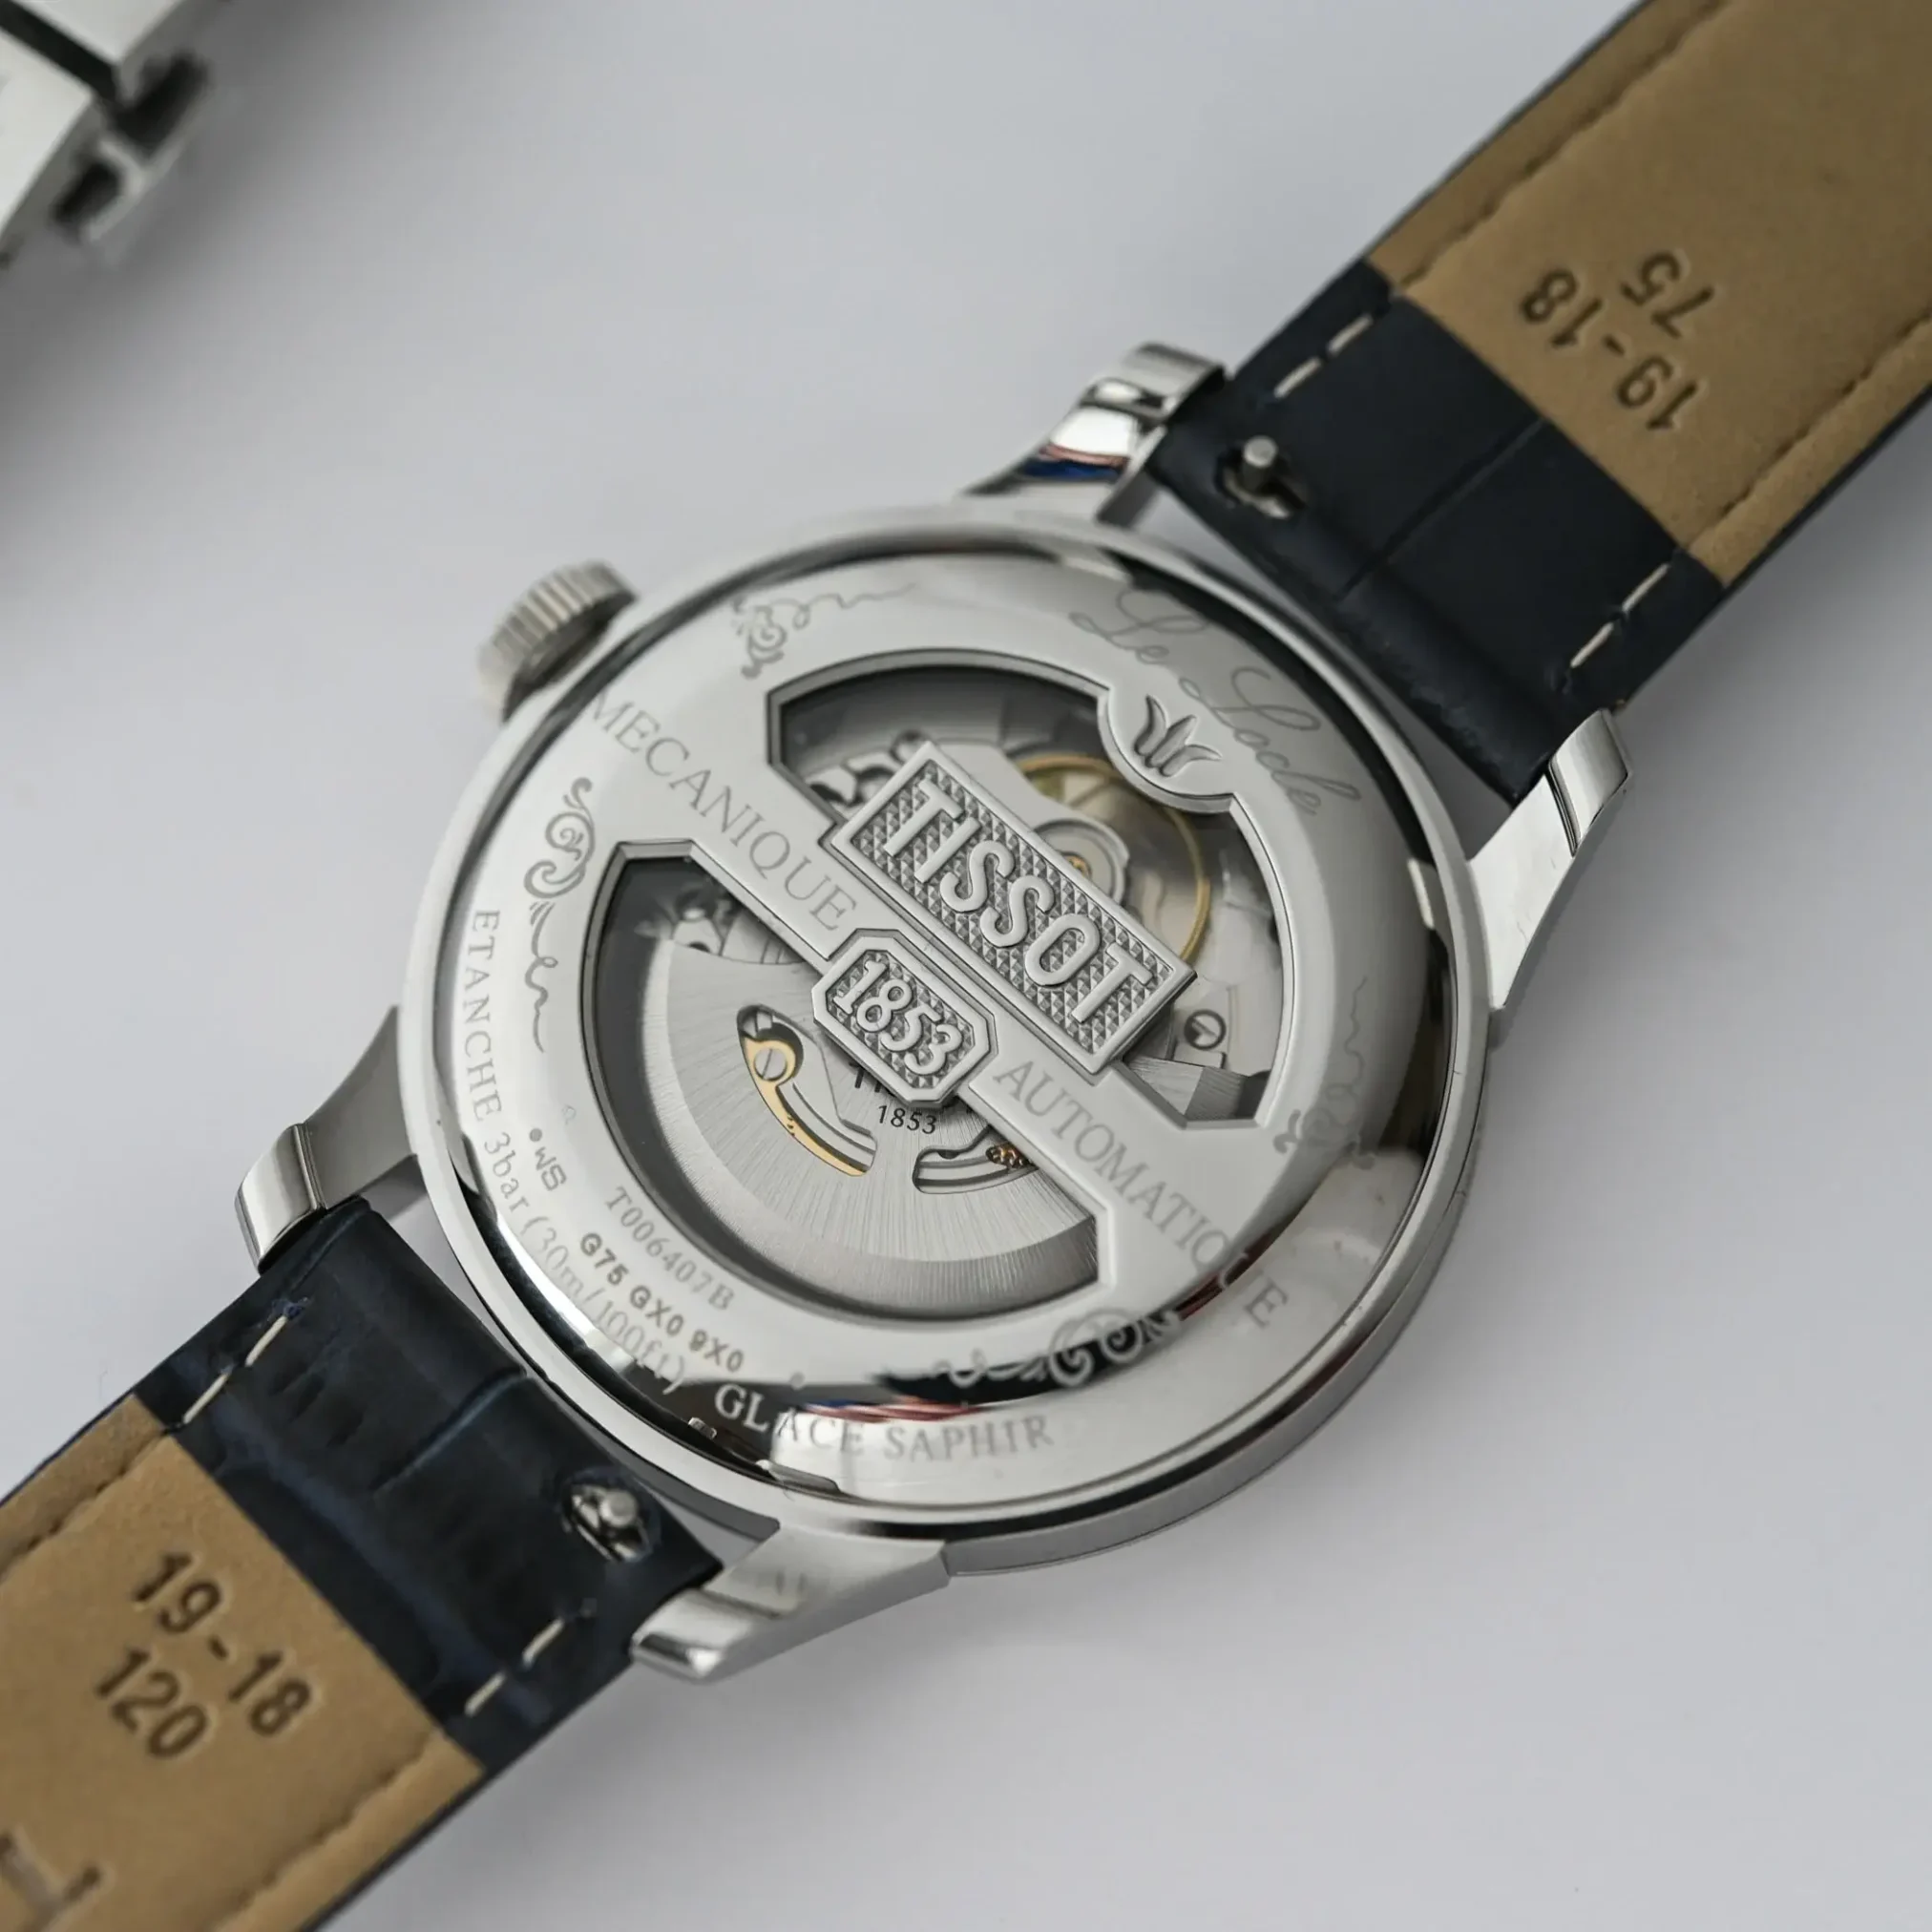 Đồng hồ Tissot Le Locle Powermatic 80 20th Anniversary T006.407.11.033.03 mặt số màu bạc. Dây đeo bằng da và thép. Thân vỏ bằng thép.